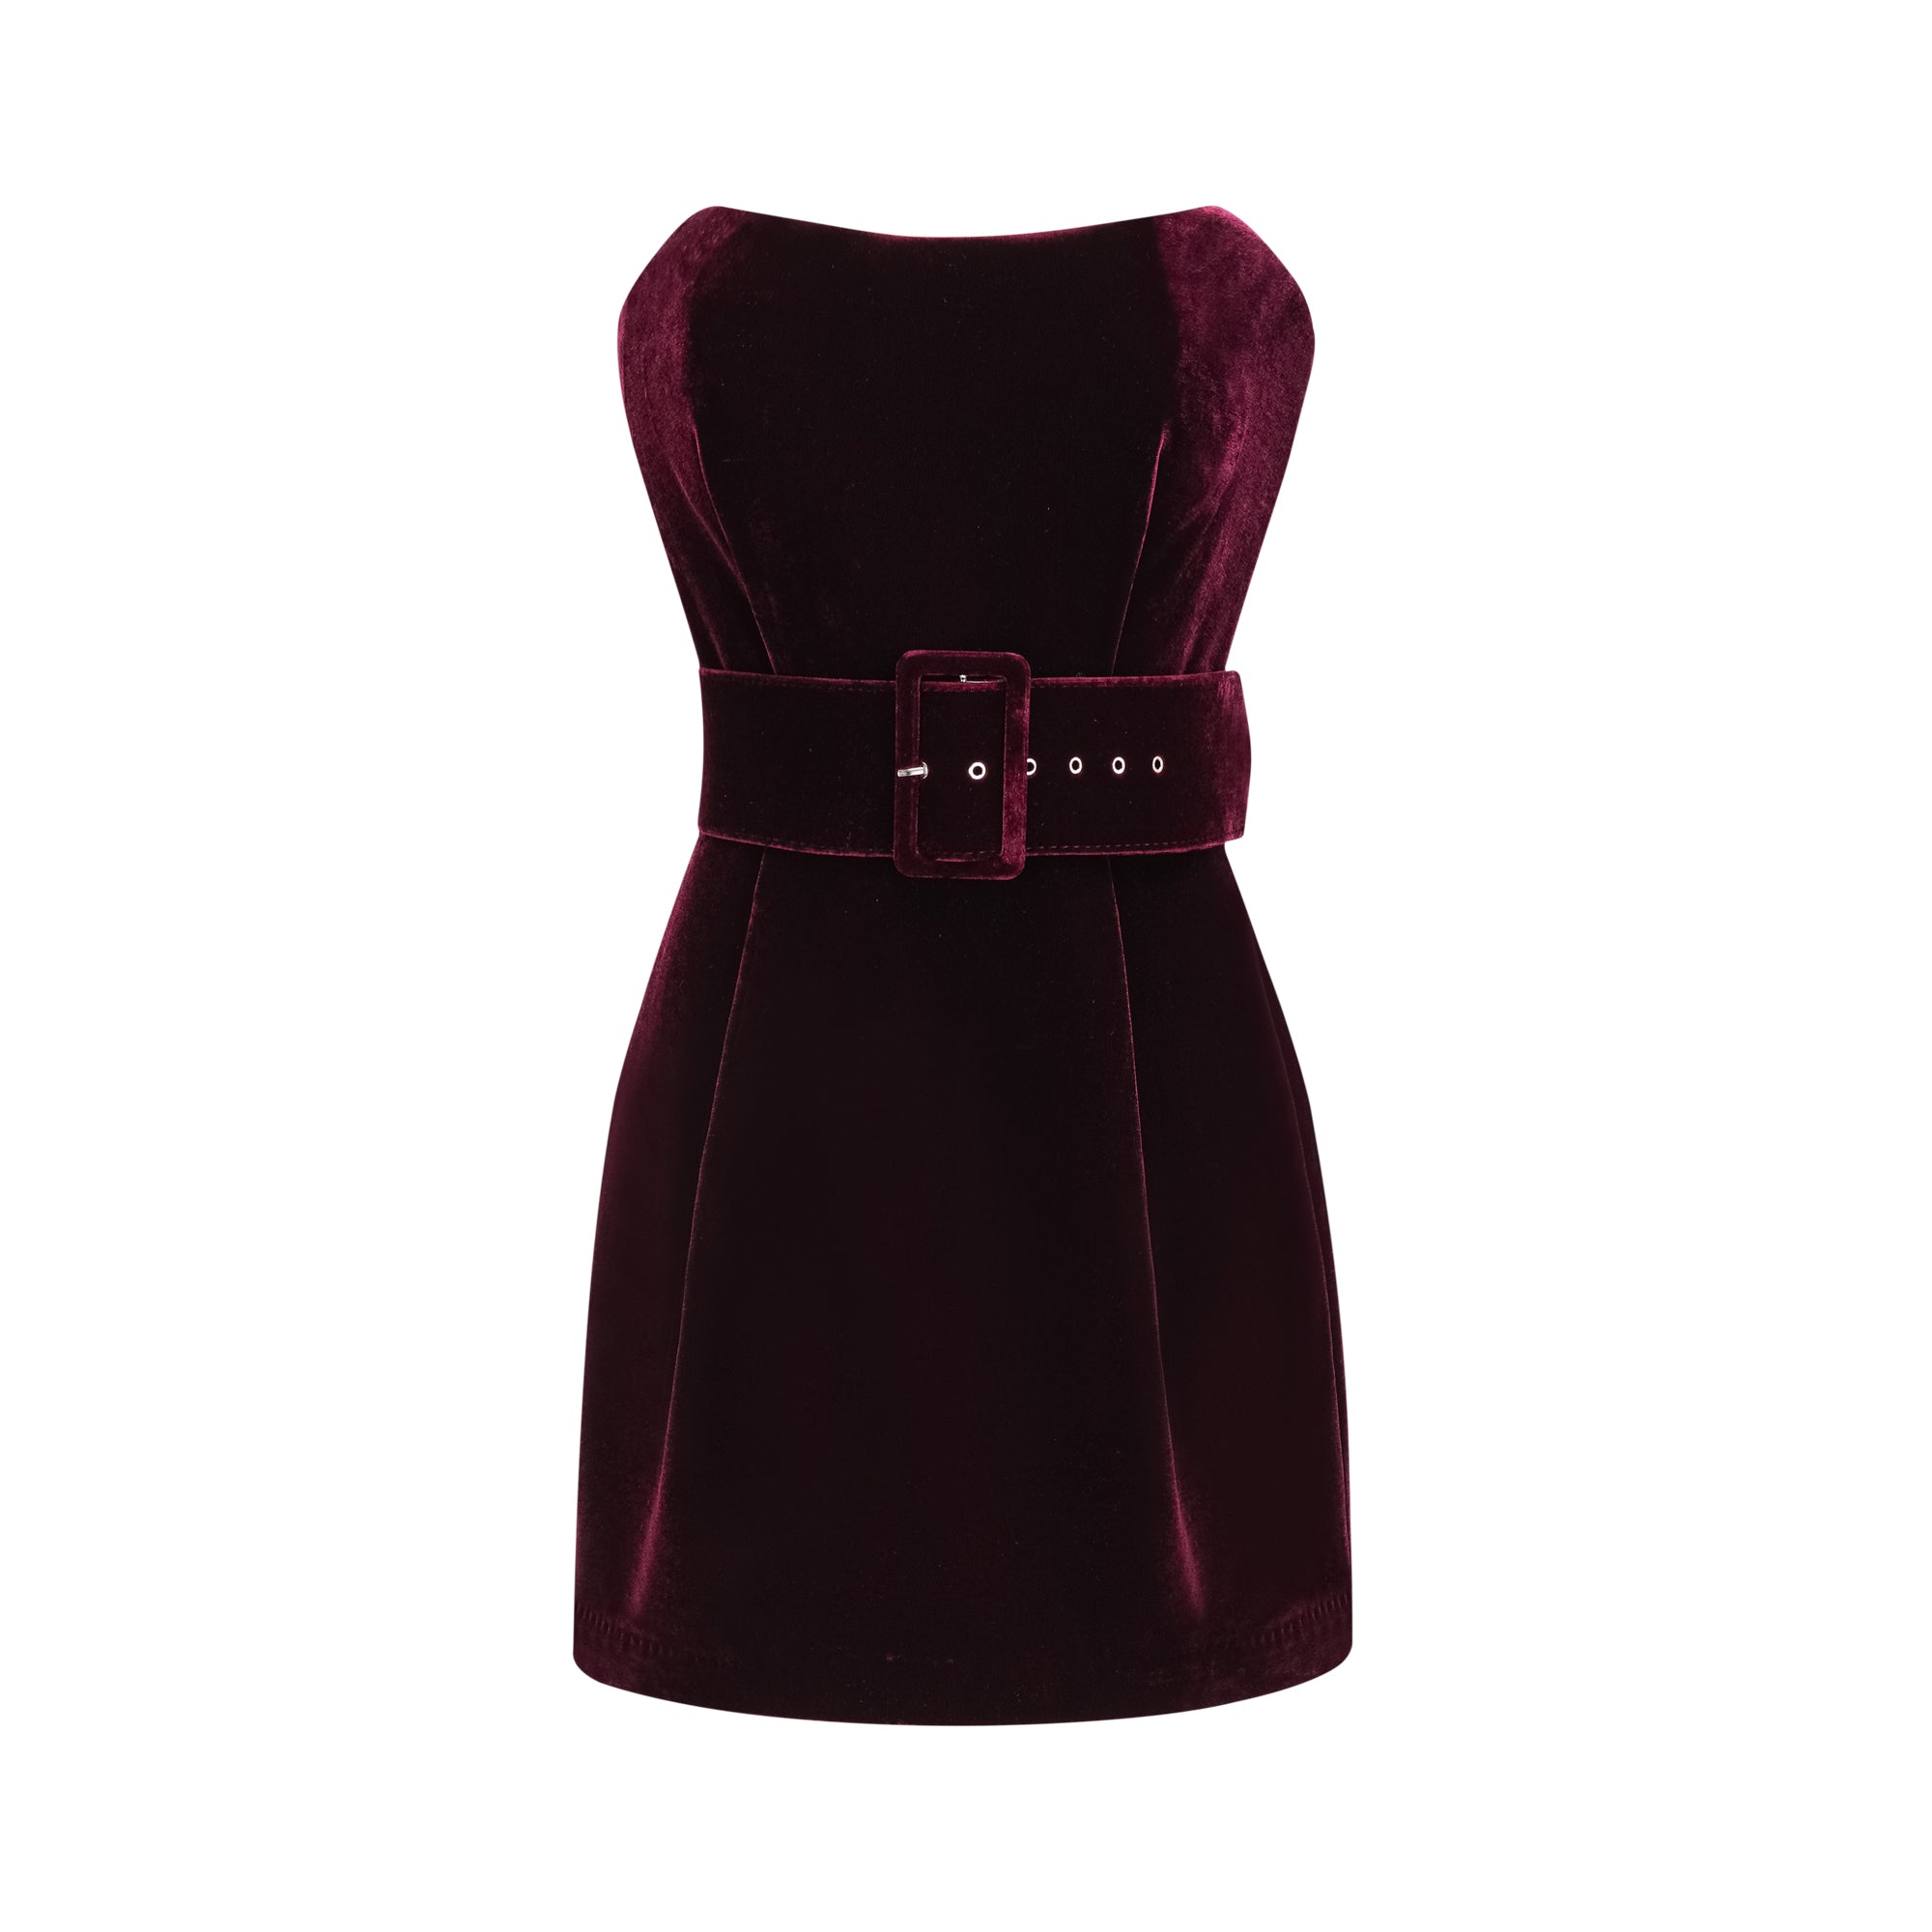 Tovelina velvet belted dress - Miss Rosier - Women's Online Boutique